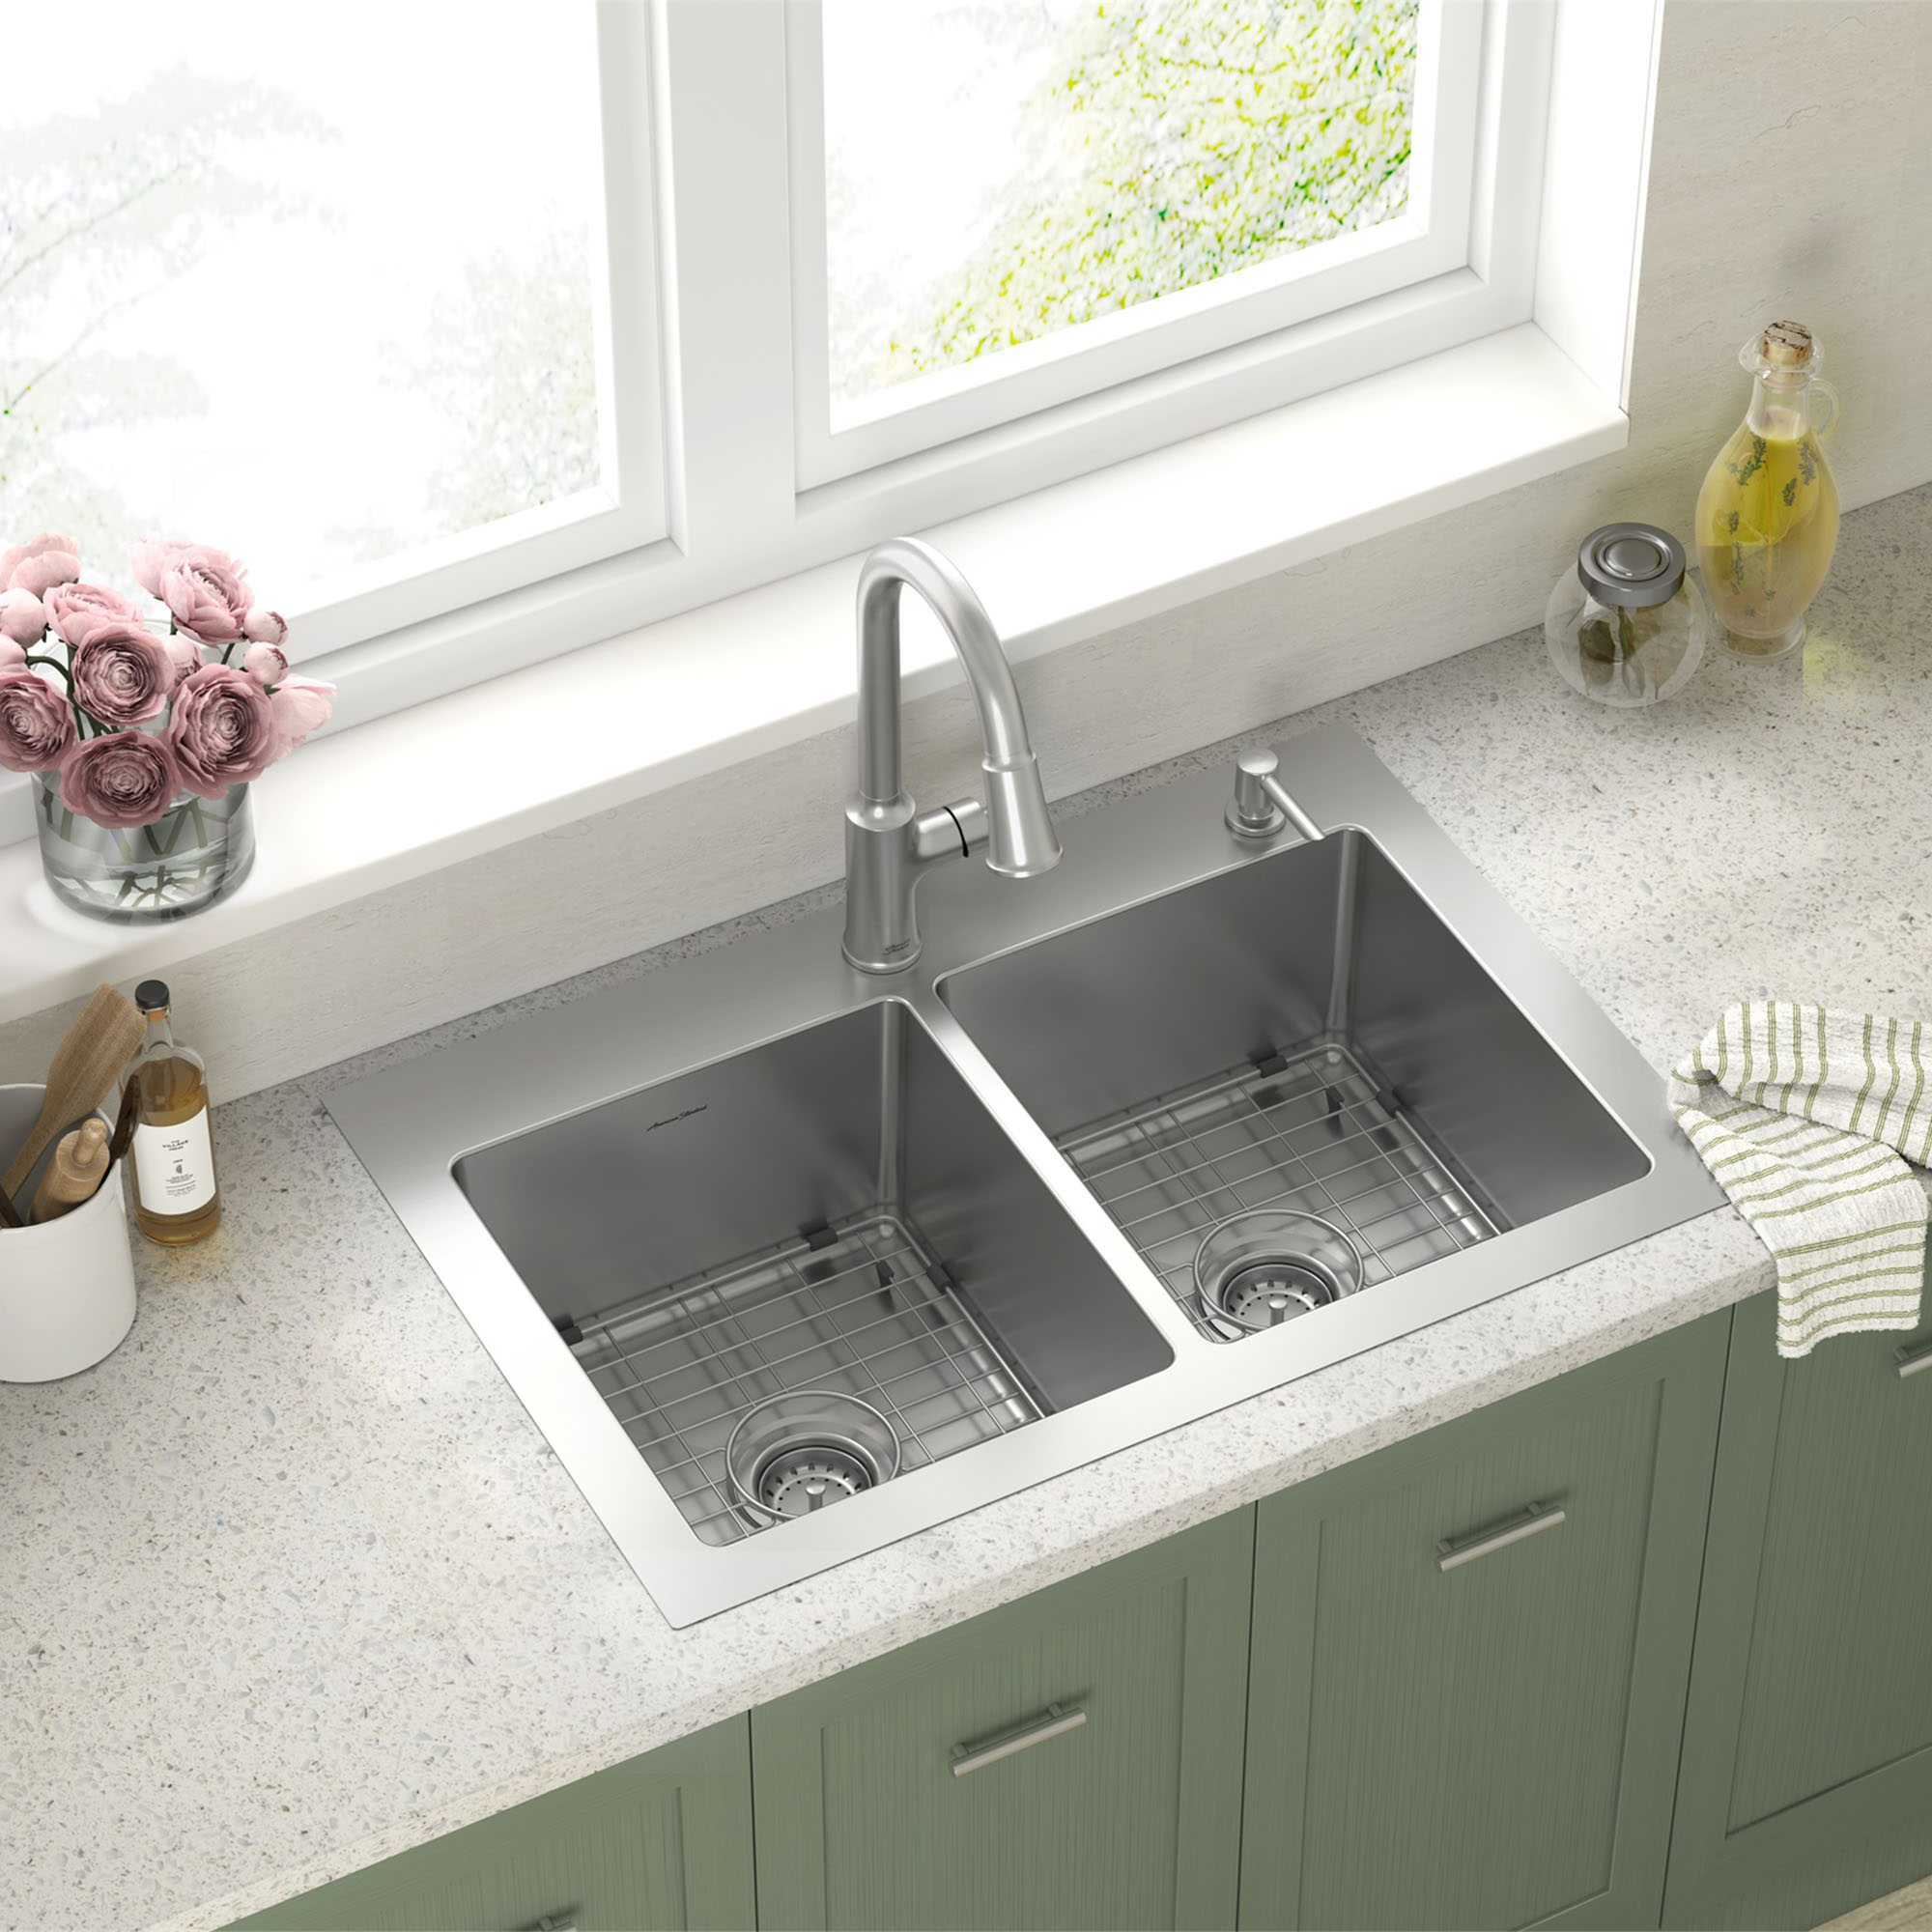 5 handy kitchen sink accessories for your kitchen